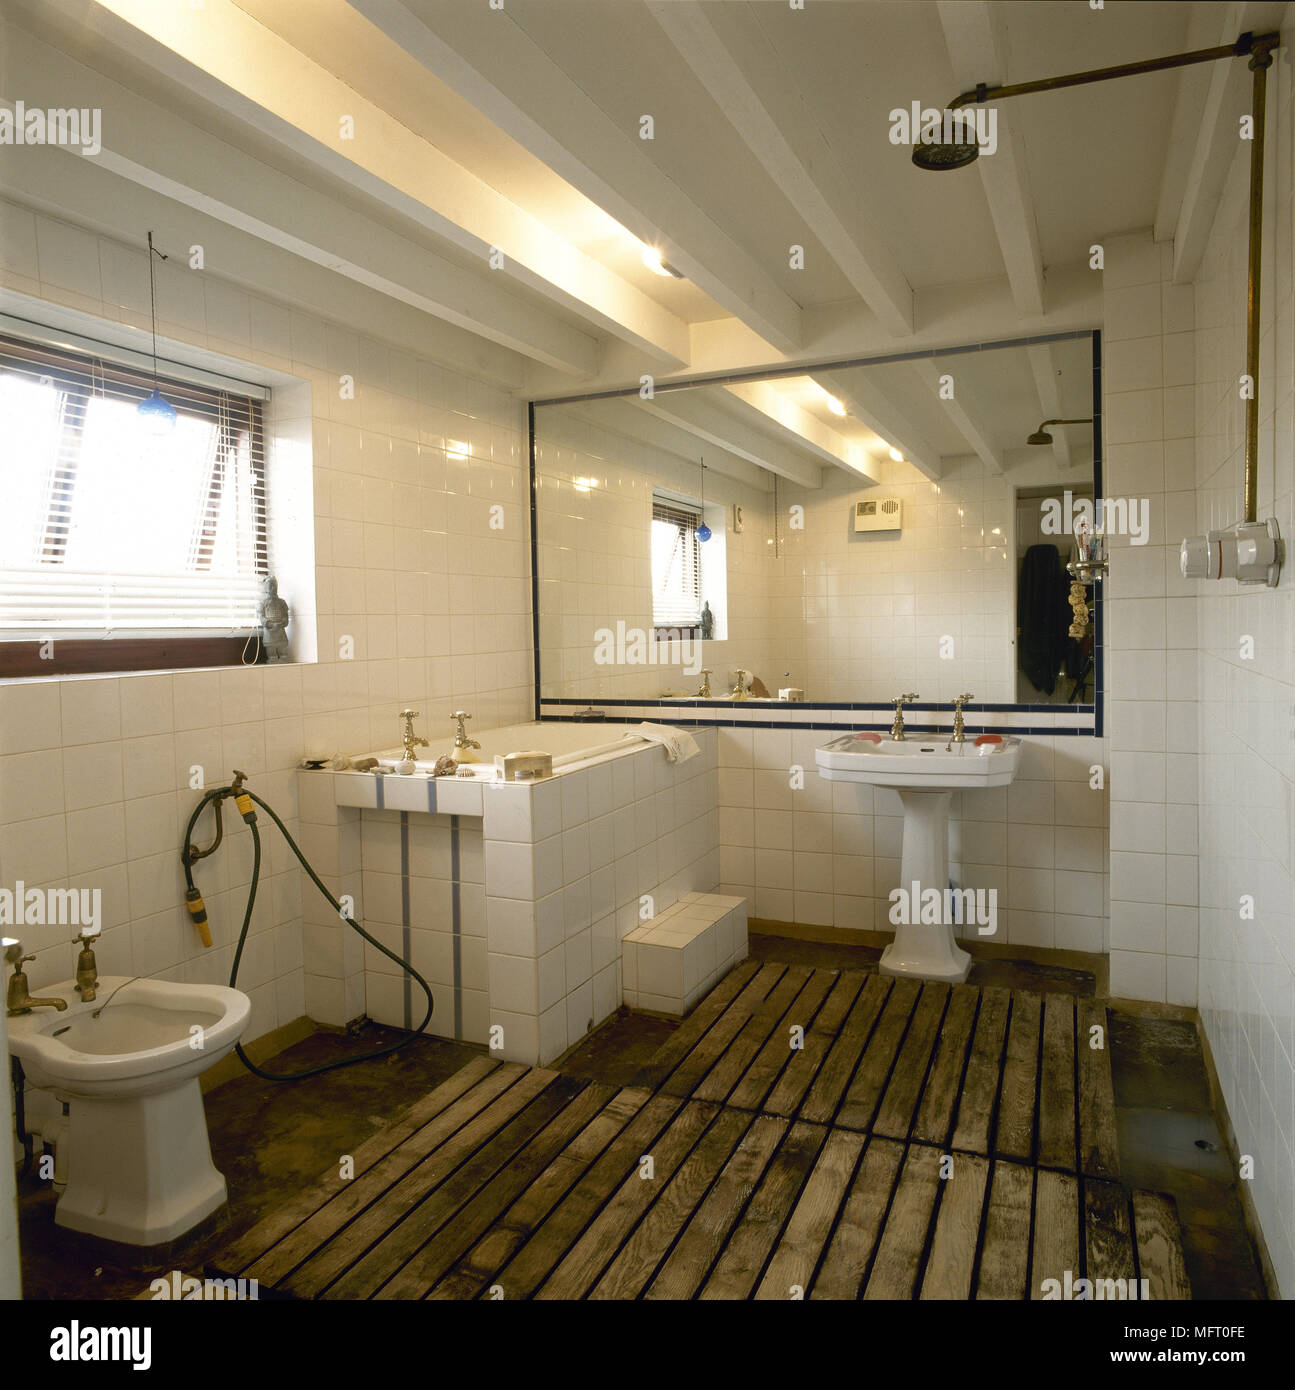 Rustikal, Land Bad mit gefliesten Wänden, offener Dusche, Balkendecke, Gelattete Holzböden und großem Spiegel. Stockfoto